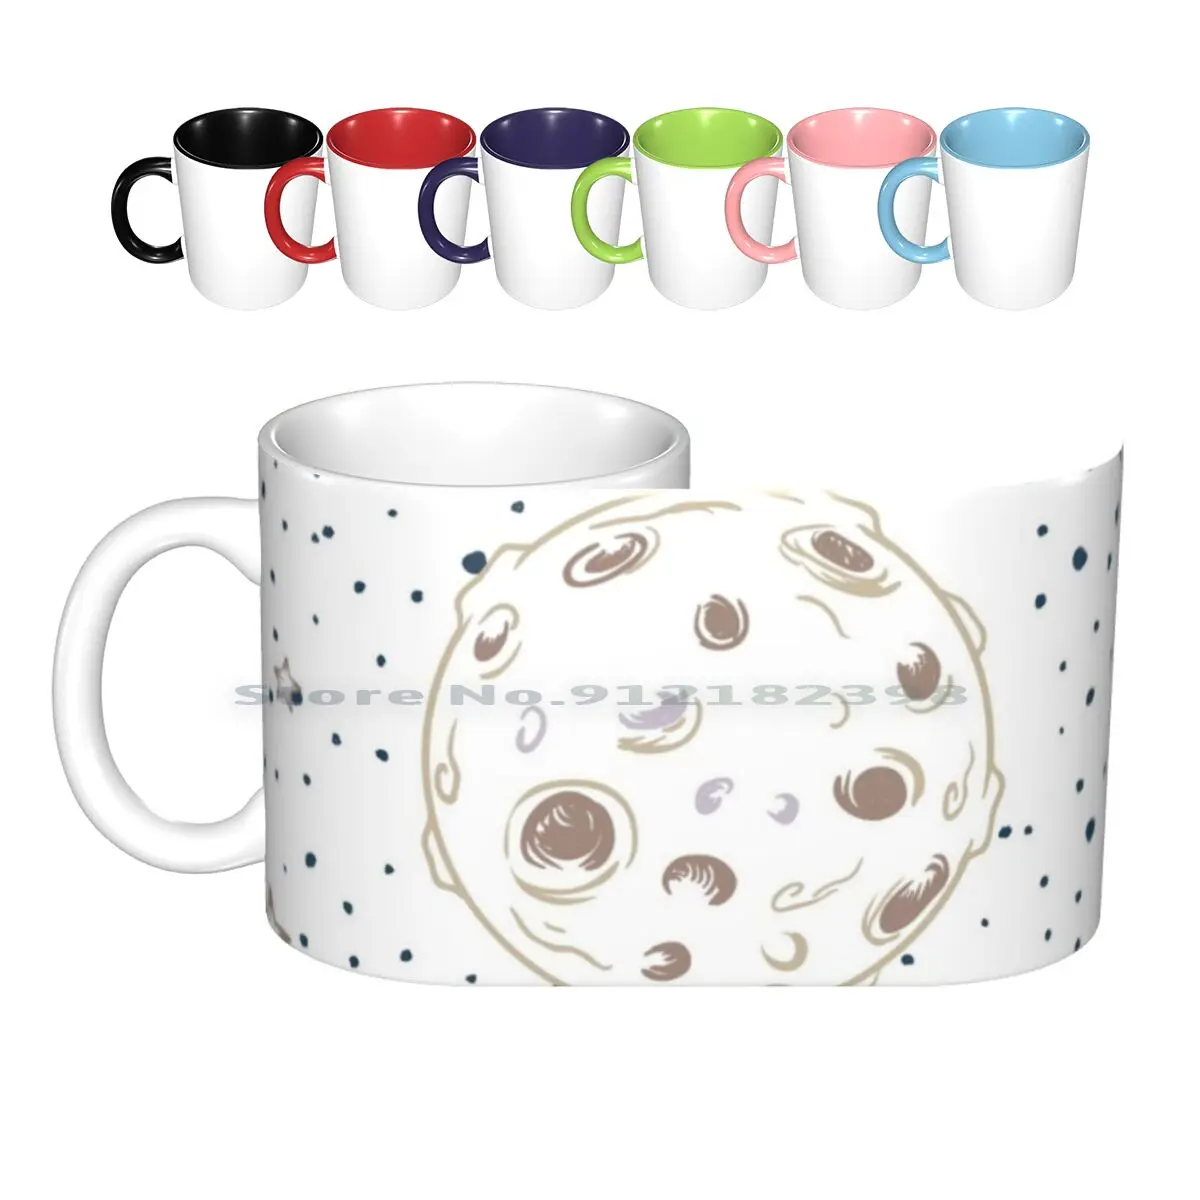 

Керамические кружки The Moon, кофейные чашки, кружка для молока, чая, луна, луна, космос, звезда, Стелла, Стелла, спизер, планета, спутник, креативн...